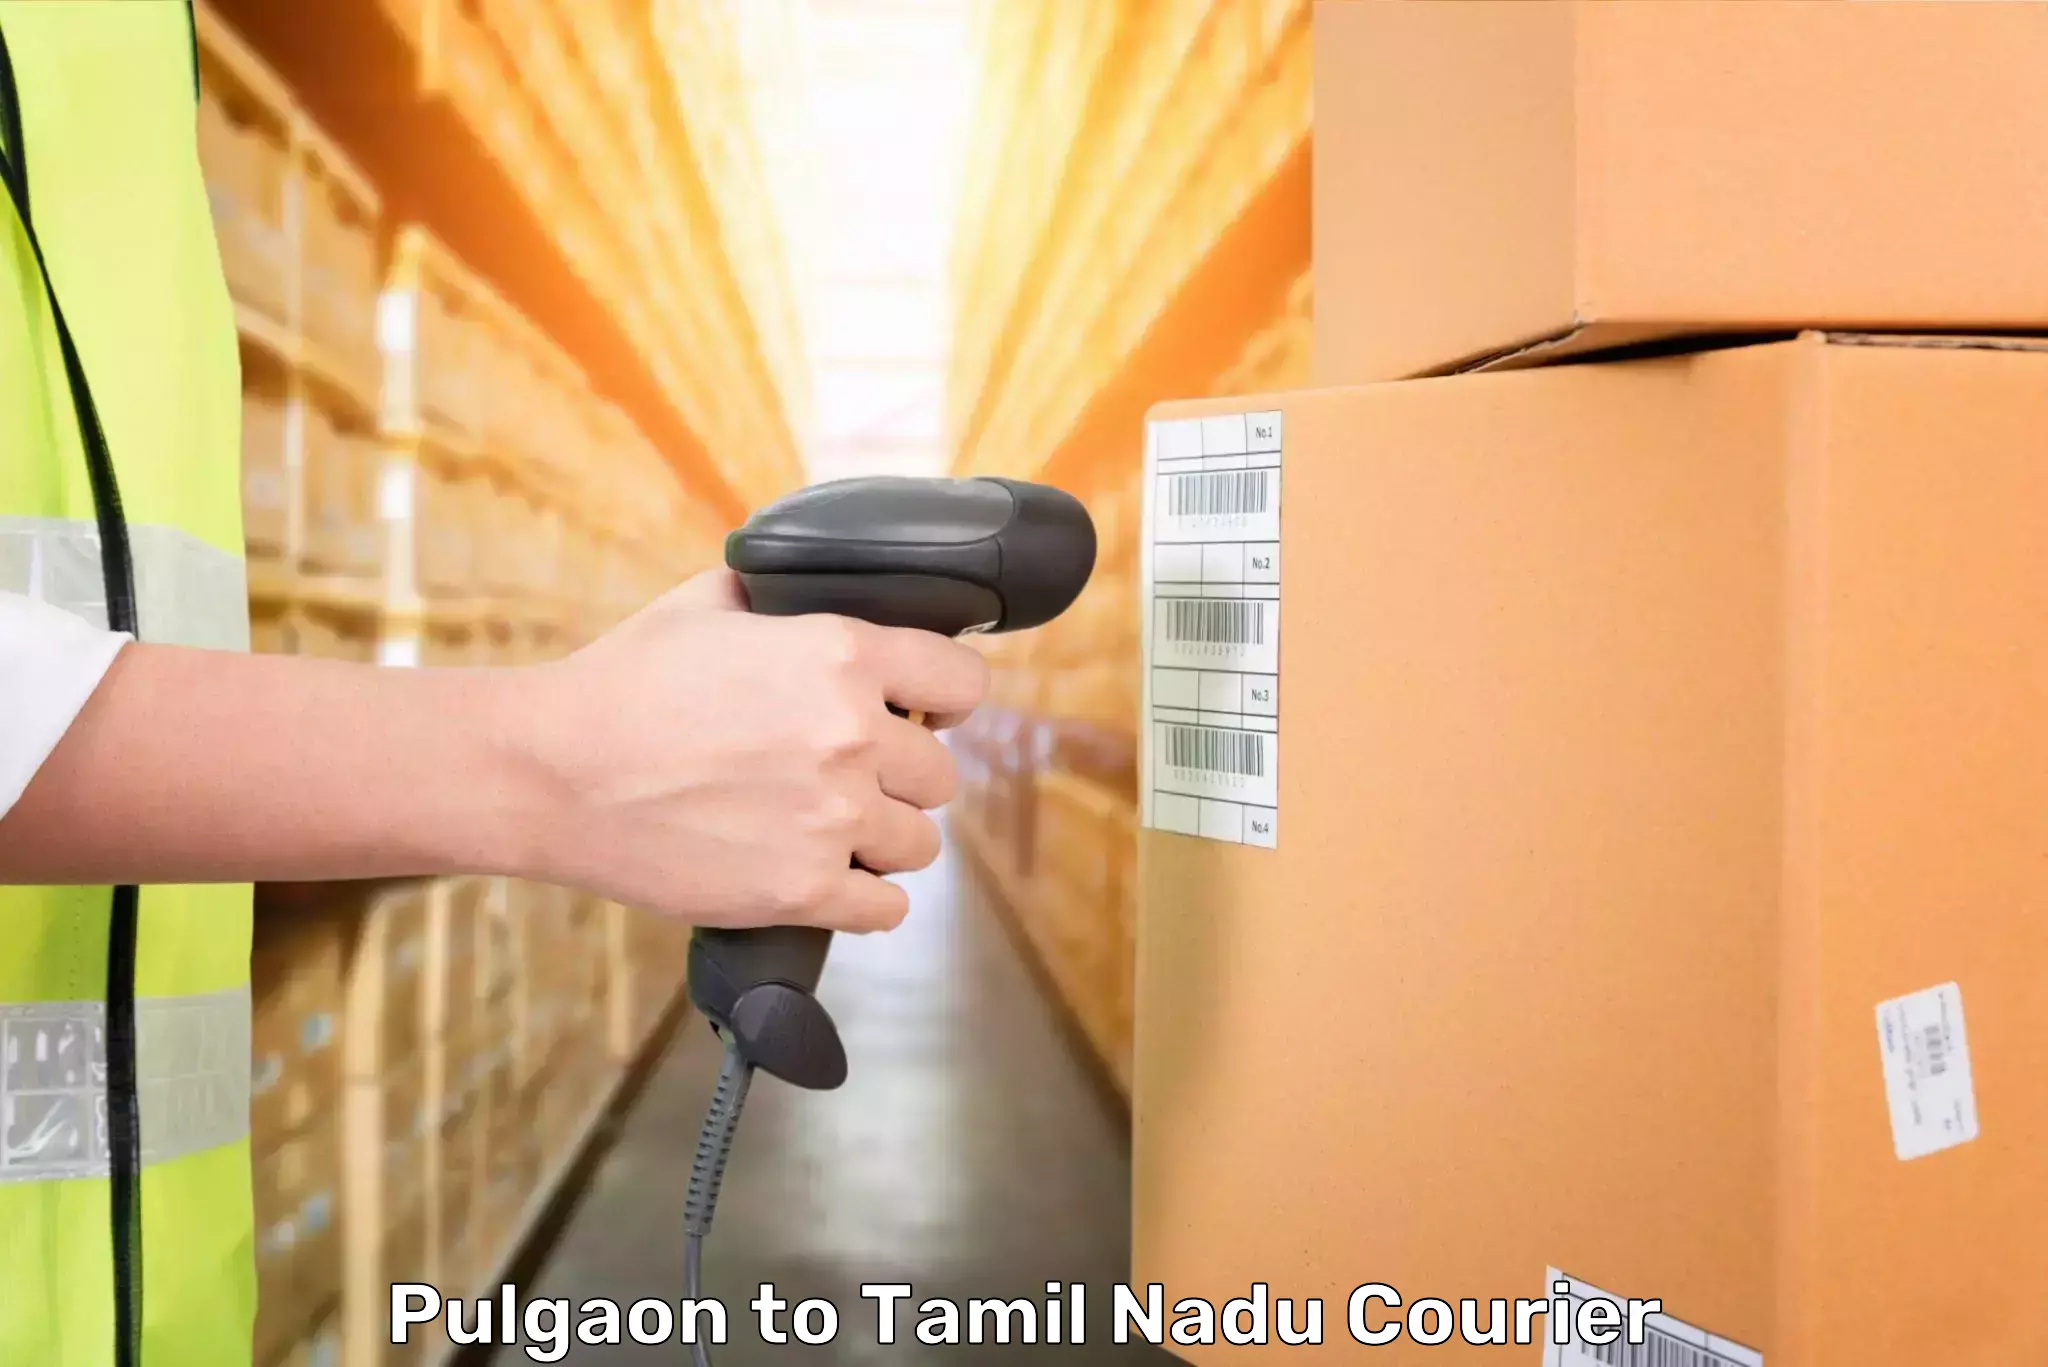 Hassle-free luggage shipping Pulgaon to Tirunelveli